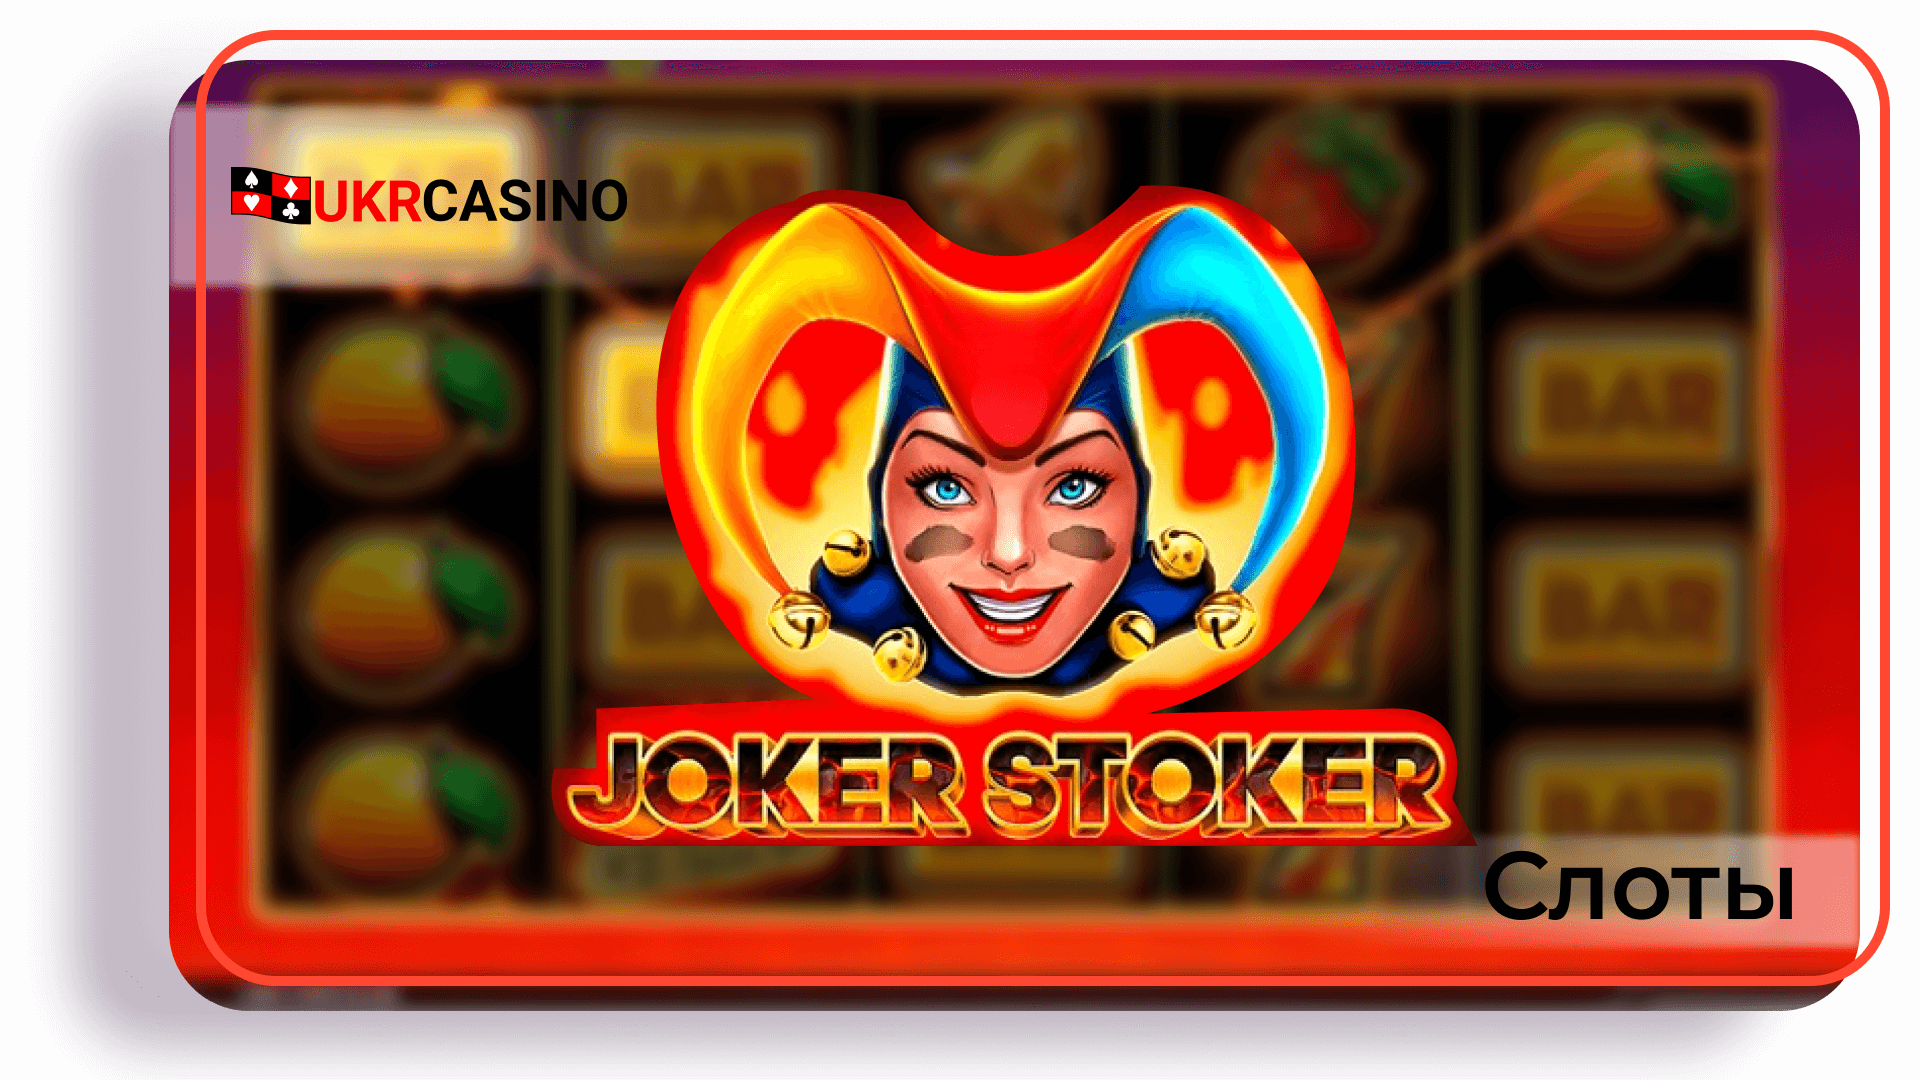 Joker Stoker - Endorphina